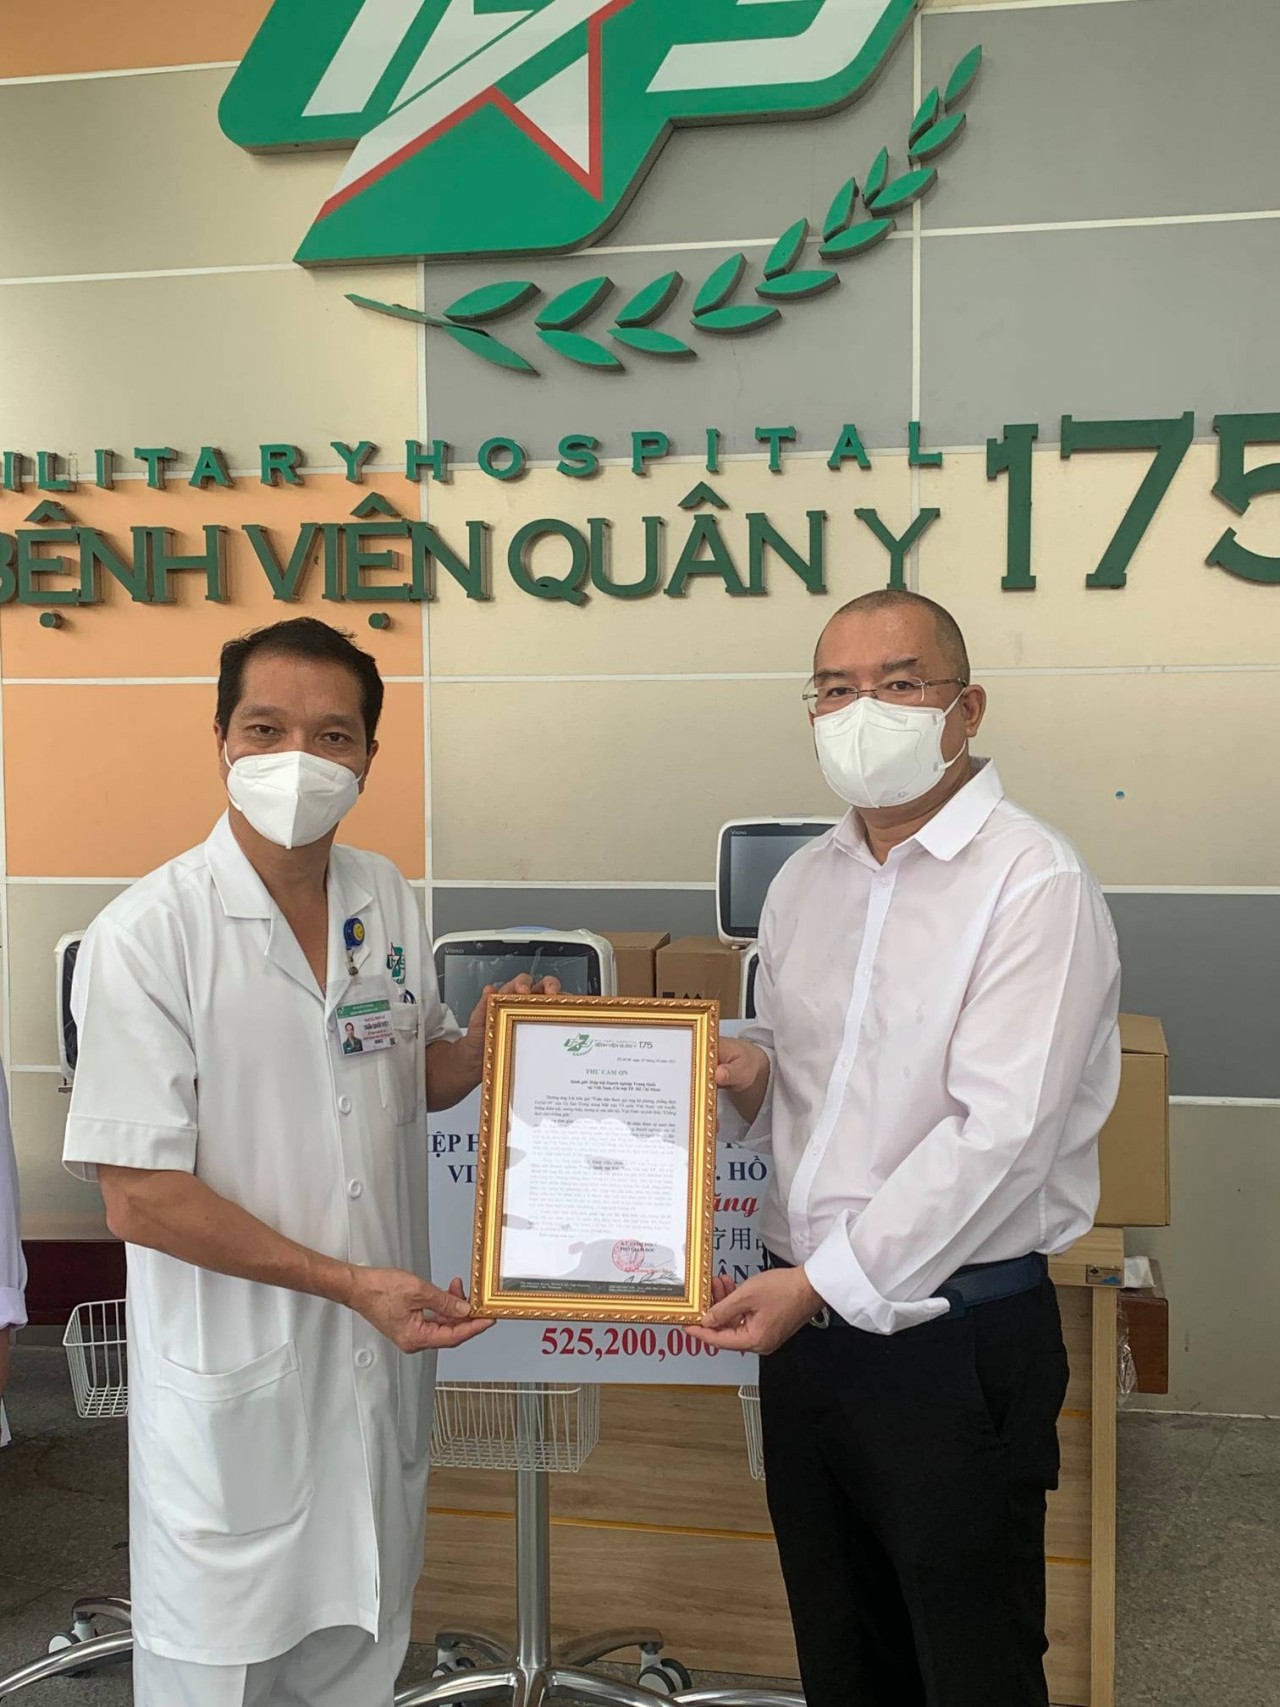 Hiệp hội doanh nghiệp Trung Quốc chi hội TP.HCM tặng vật tư y tế cho Bệnh viện Quân y 175